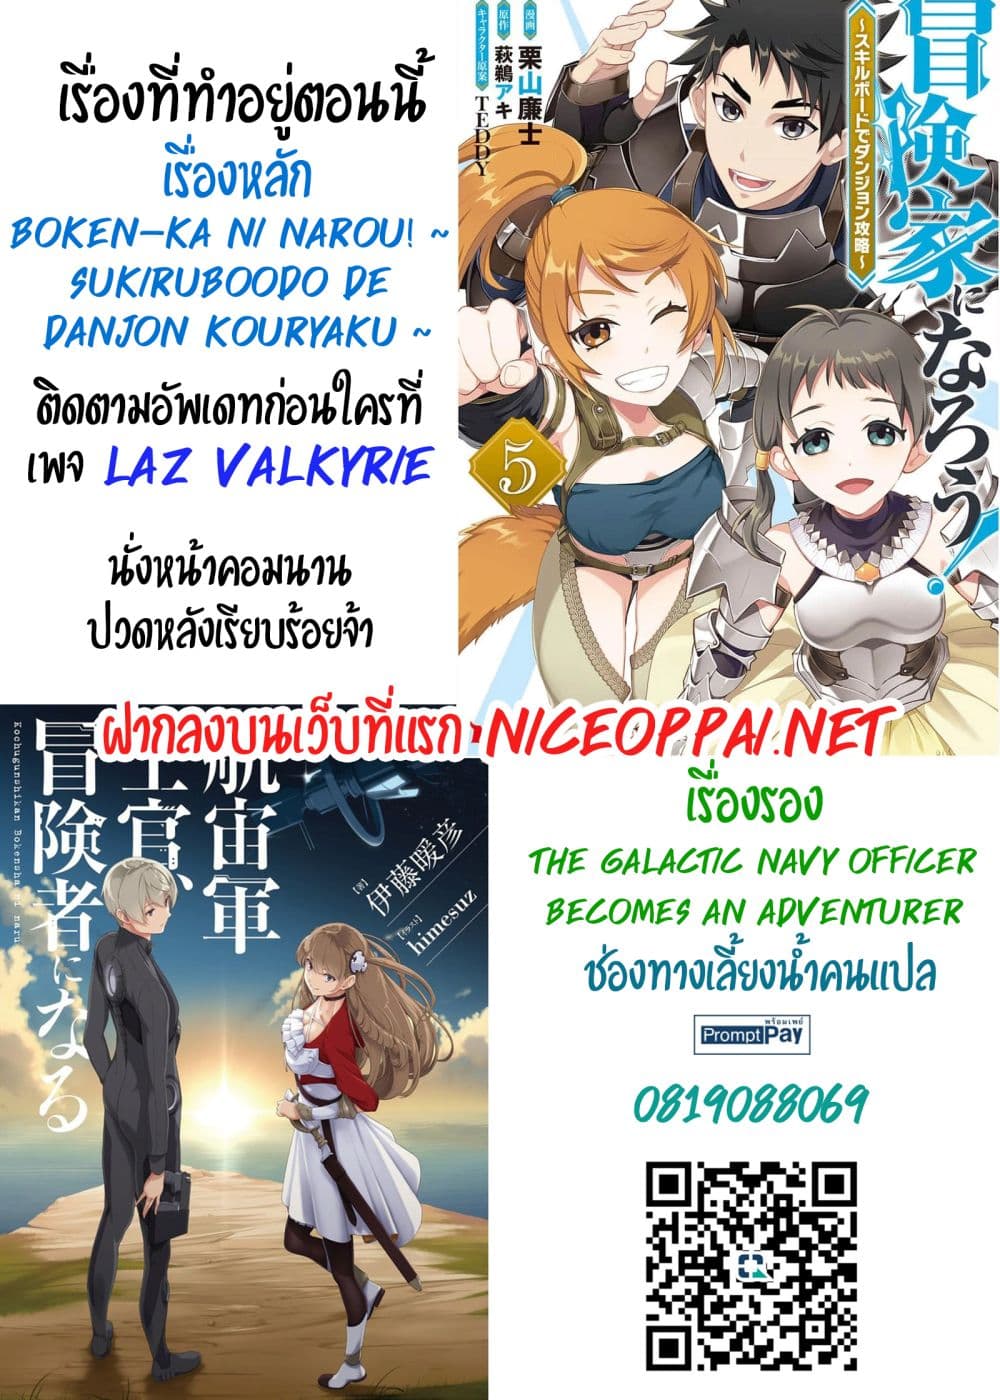 Boken-ka ni Narou! ~ Sukiruboodo de Danjon Kouryaku ~ 36-36